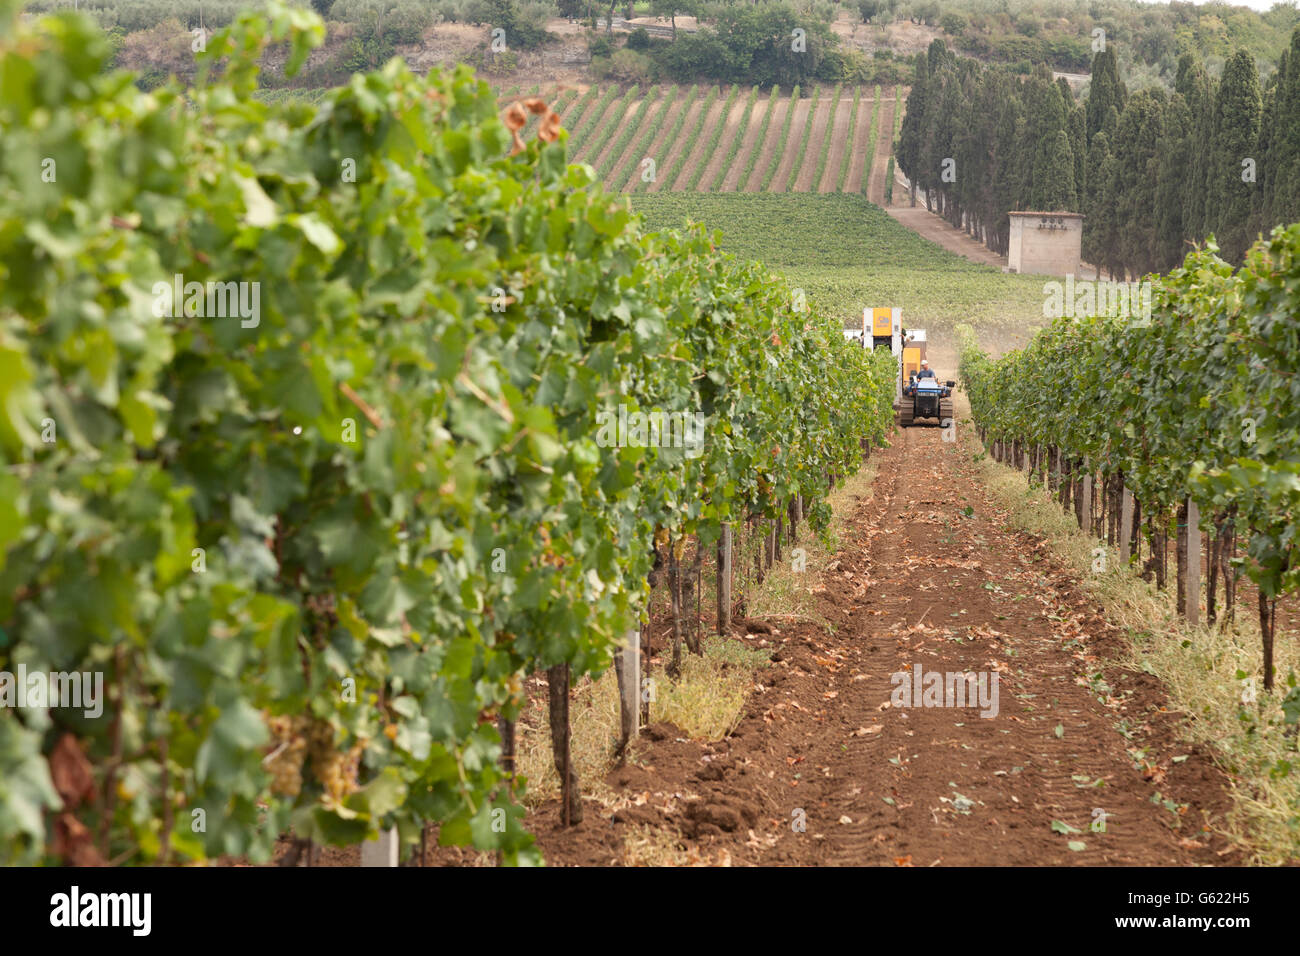 Rangées de vignes avec une moissonneuse mécanique dans la distance la récolte du raisin, à Frascati, Italie, Europe Banque D'Images